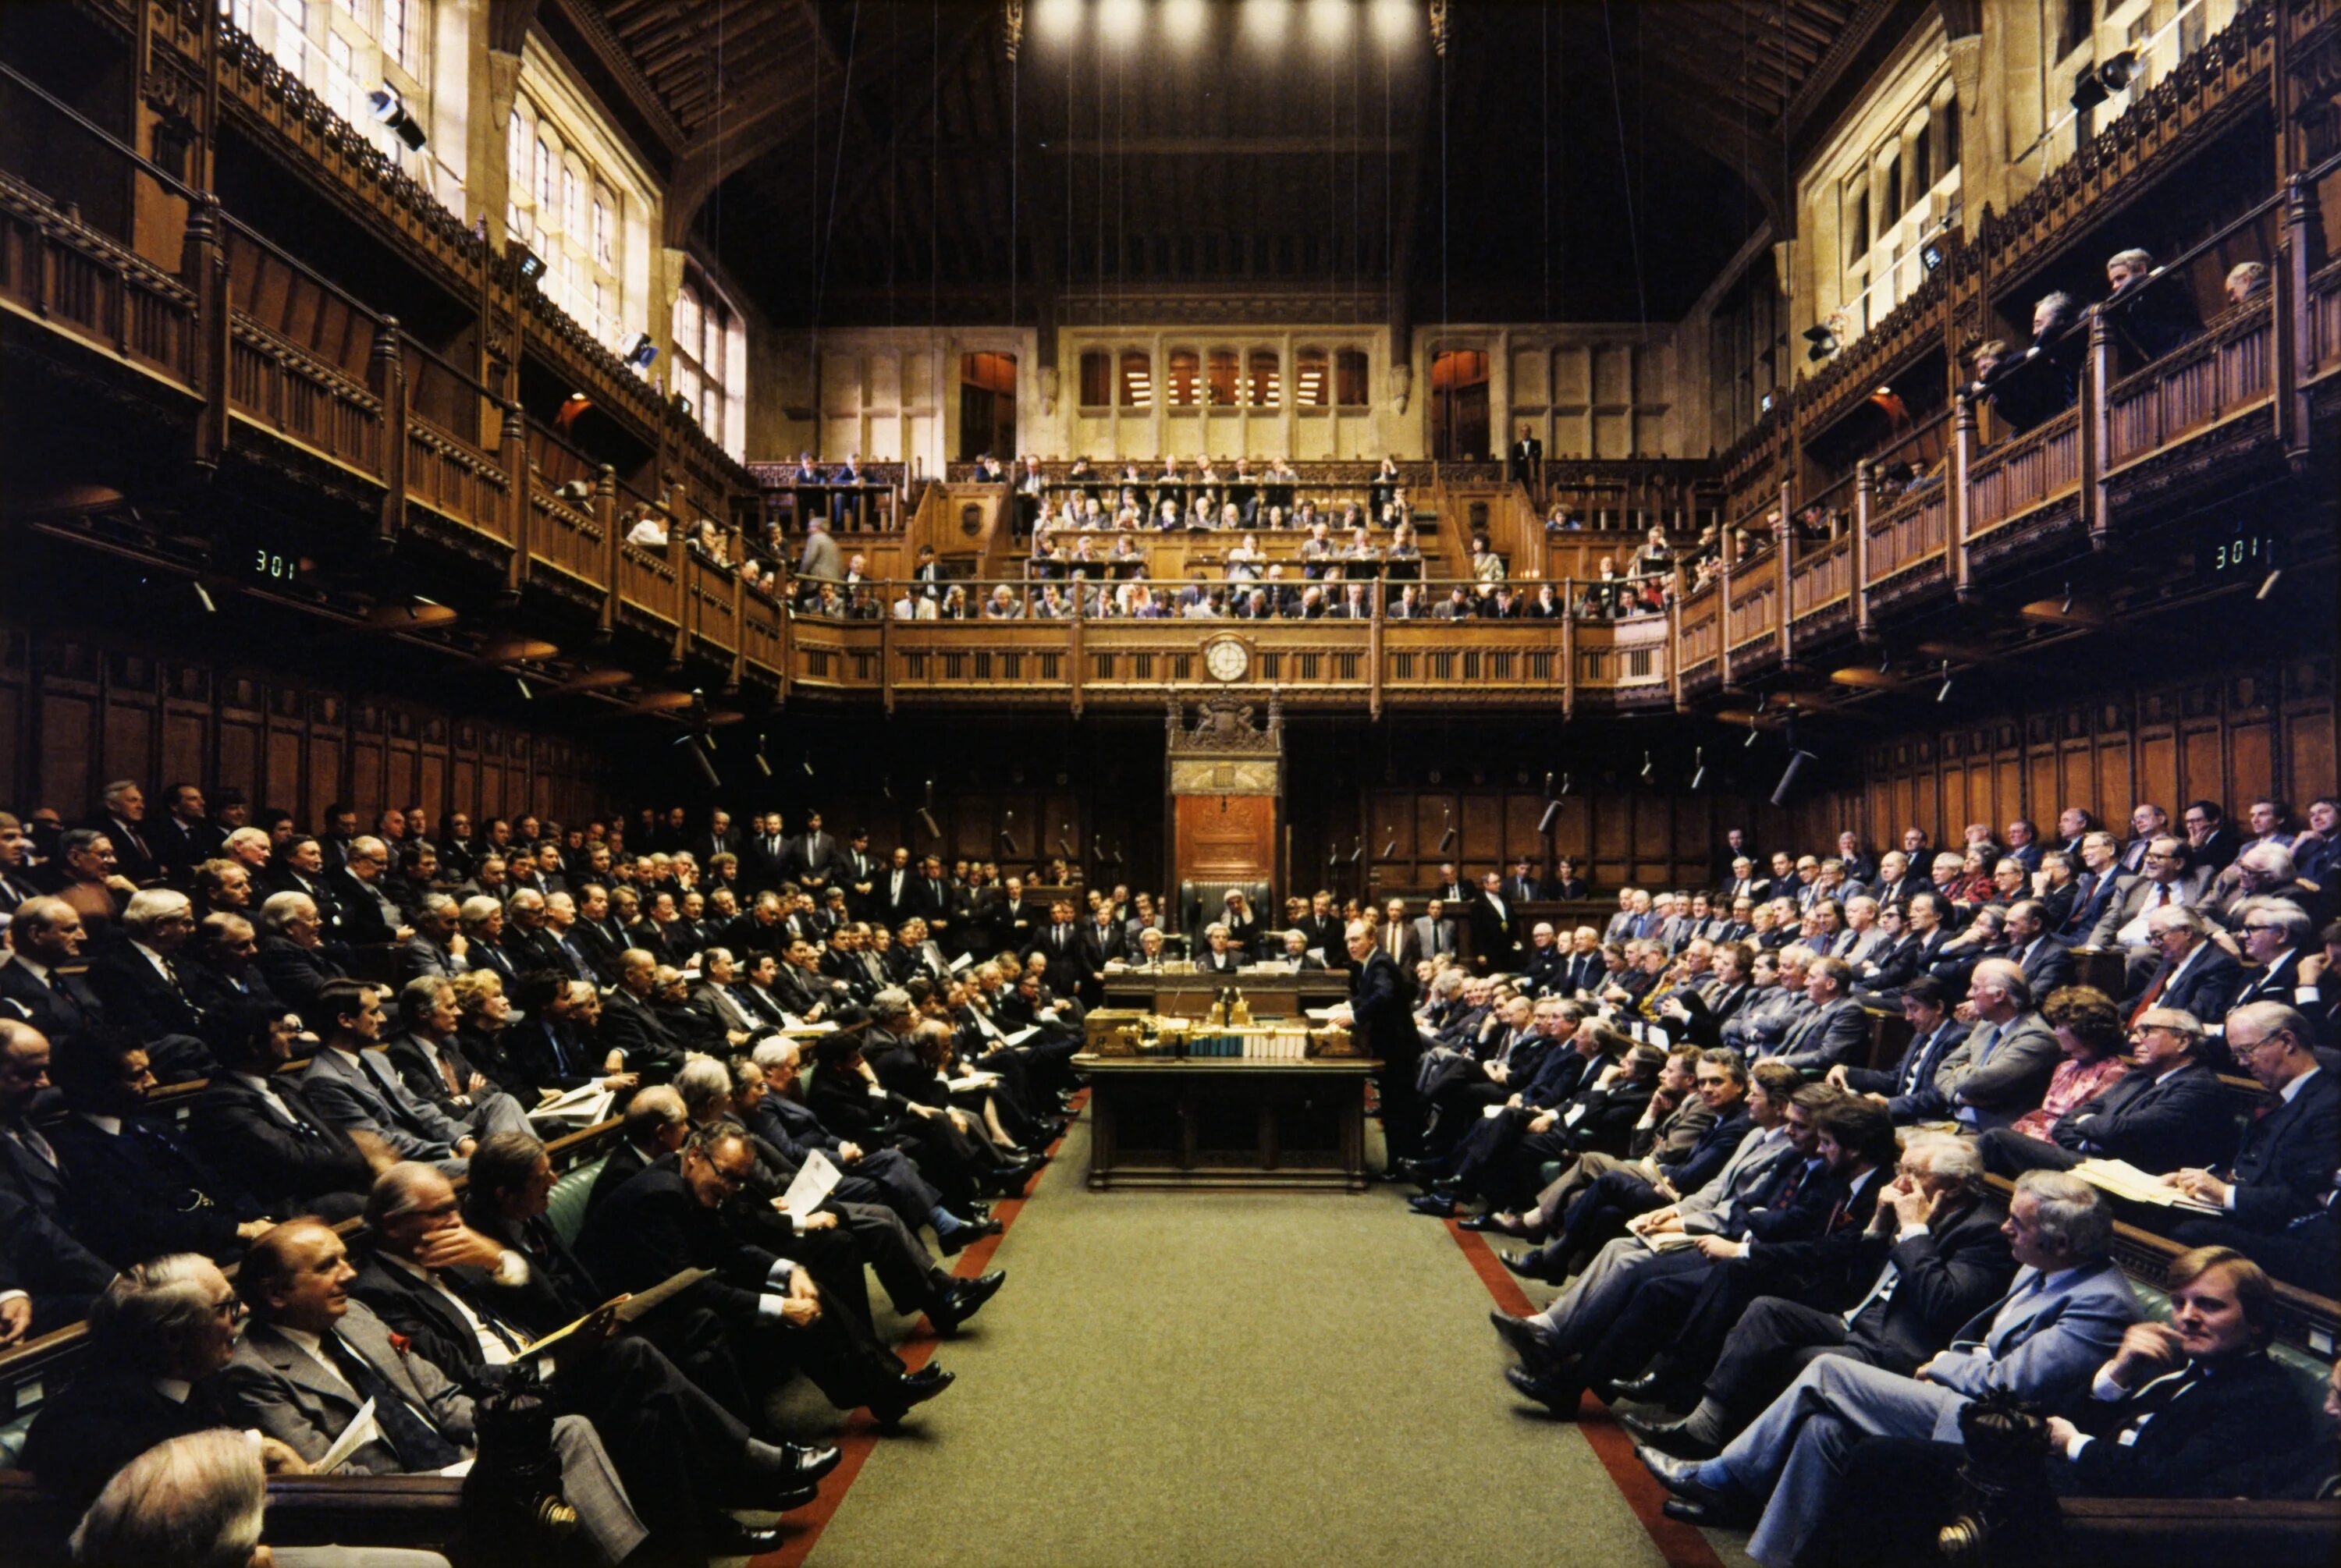 В каком году первый парламент англии. Палата общин Великобритании 20 век. Британский парламент 20 век. Палата общин Великобритании 19 век. Палата лордов Великобритании 19 век.